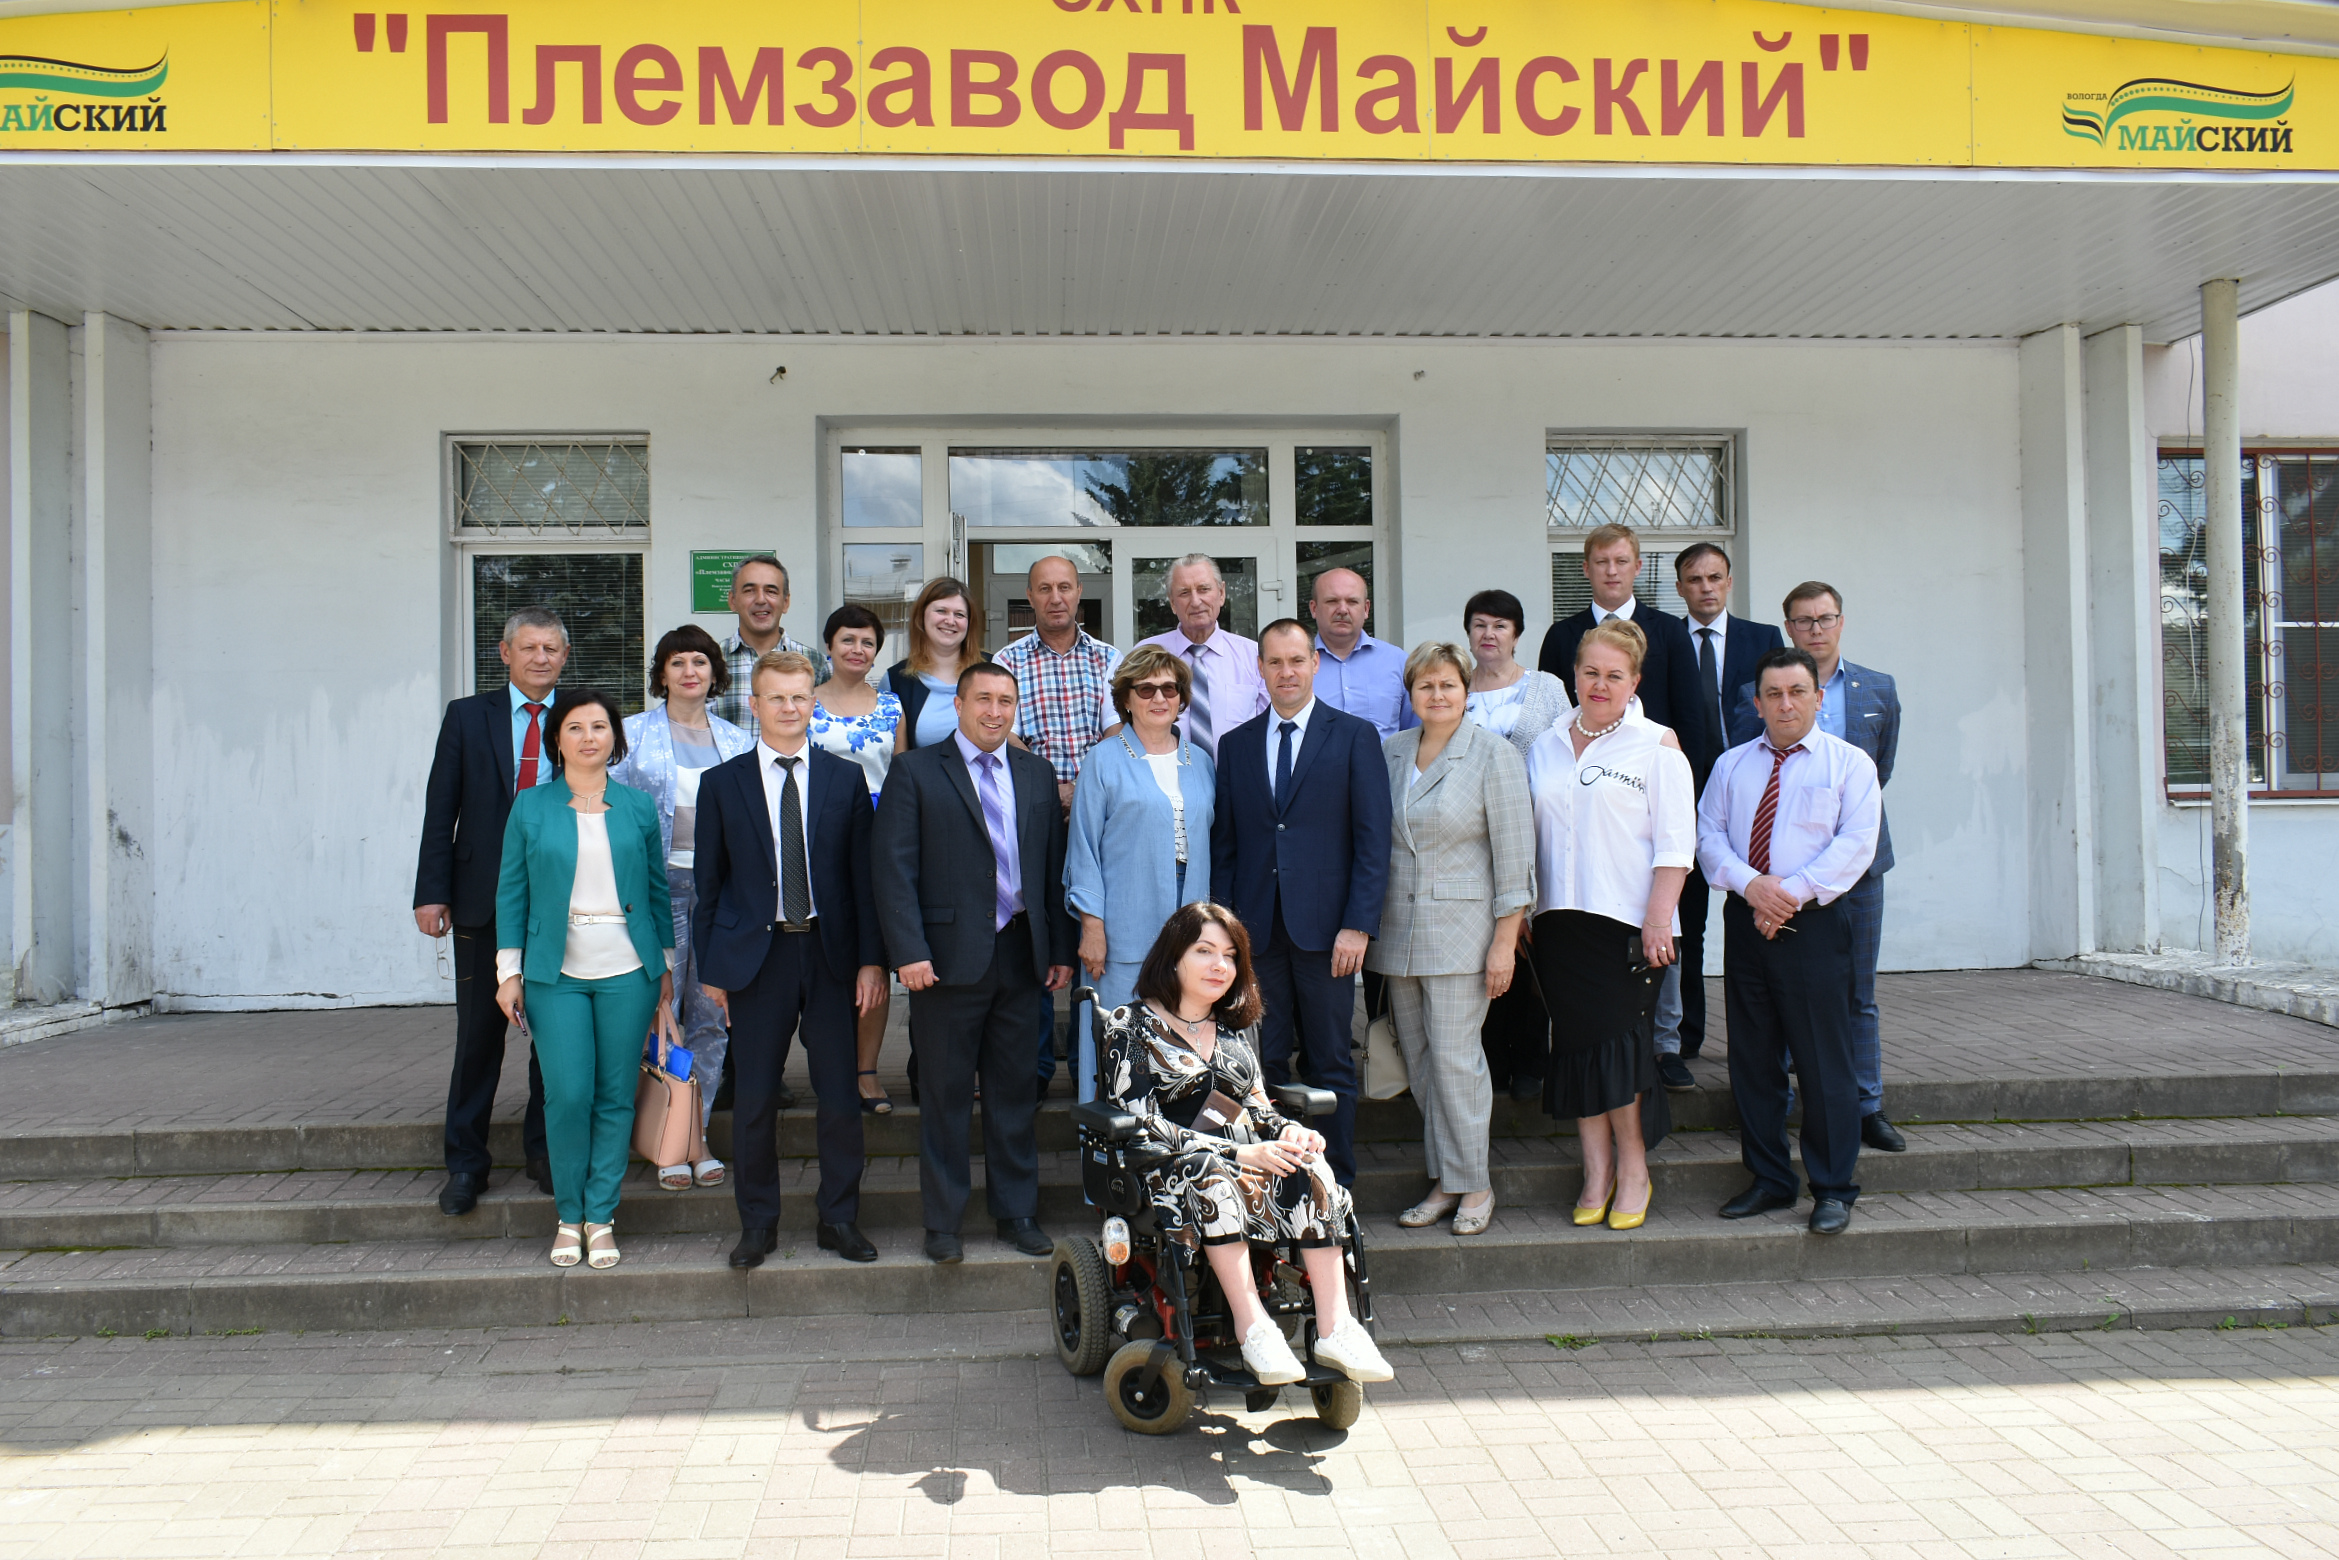 Члены Общественной палаты Вологодской области посетили посёлок Майский Вологодского района